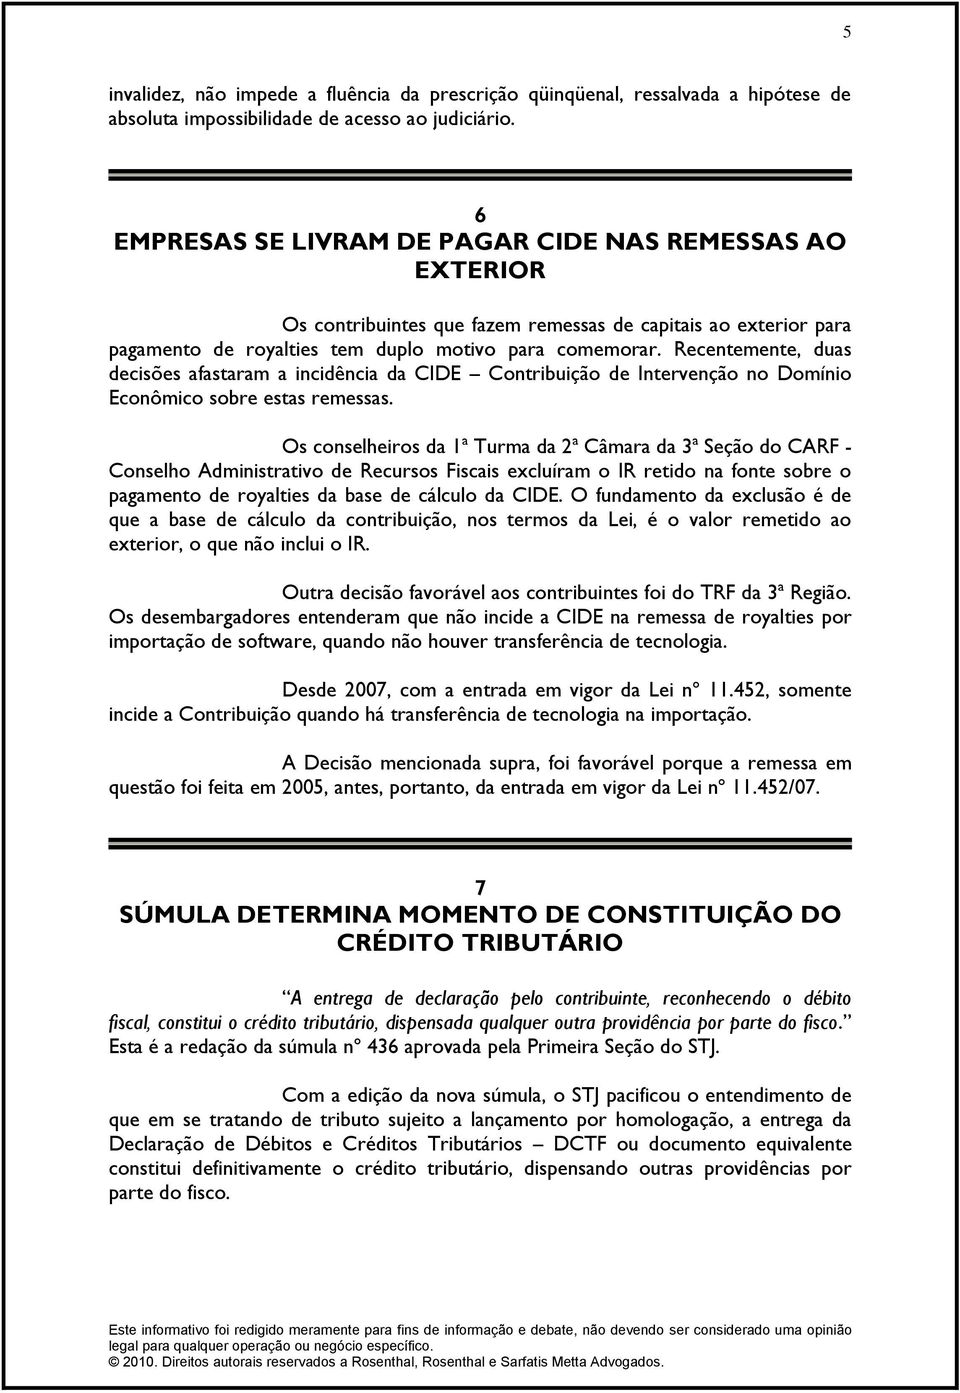 Recentemente, duas decisões afastaram a incidência da CIDE Contribuição de Intervenção no Domínio Econômico sobre estas remessas.